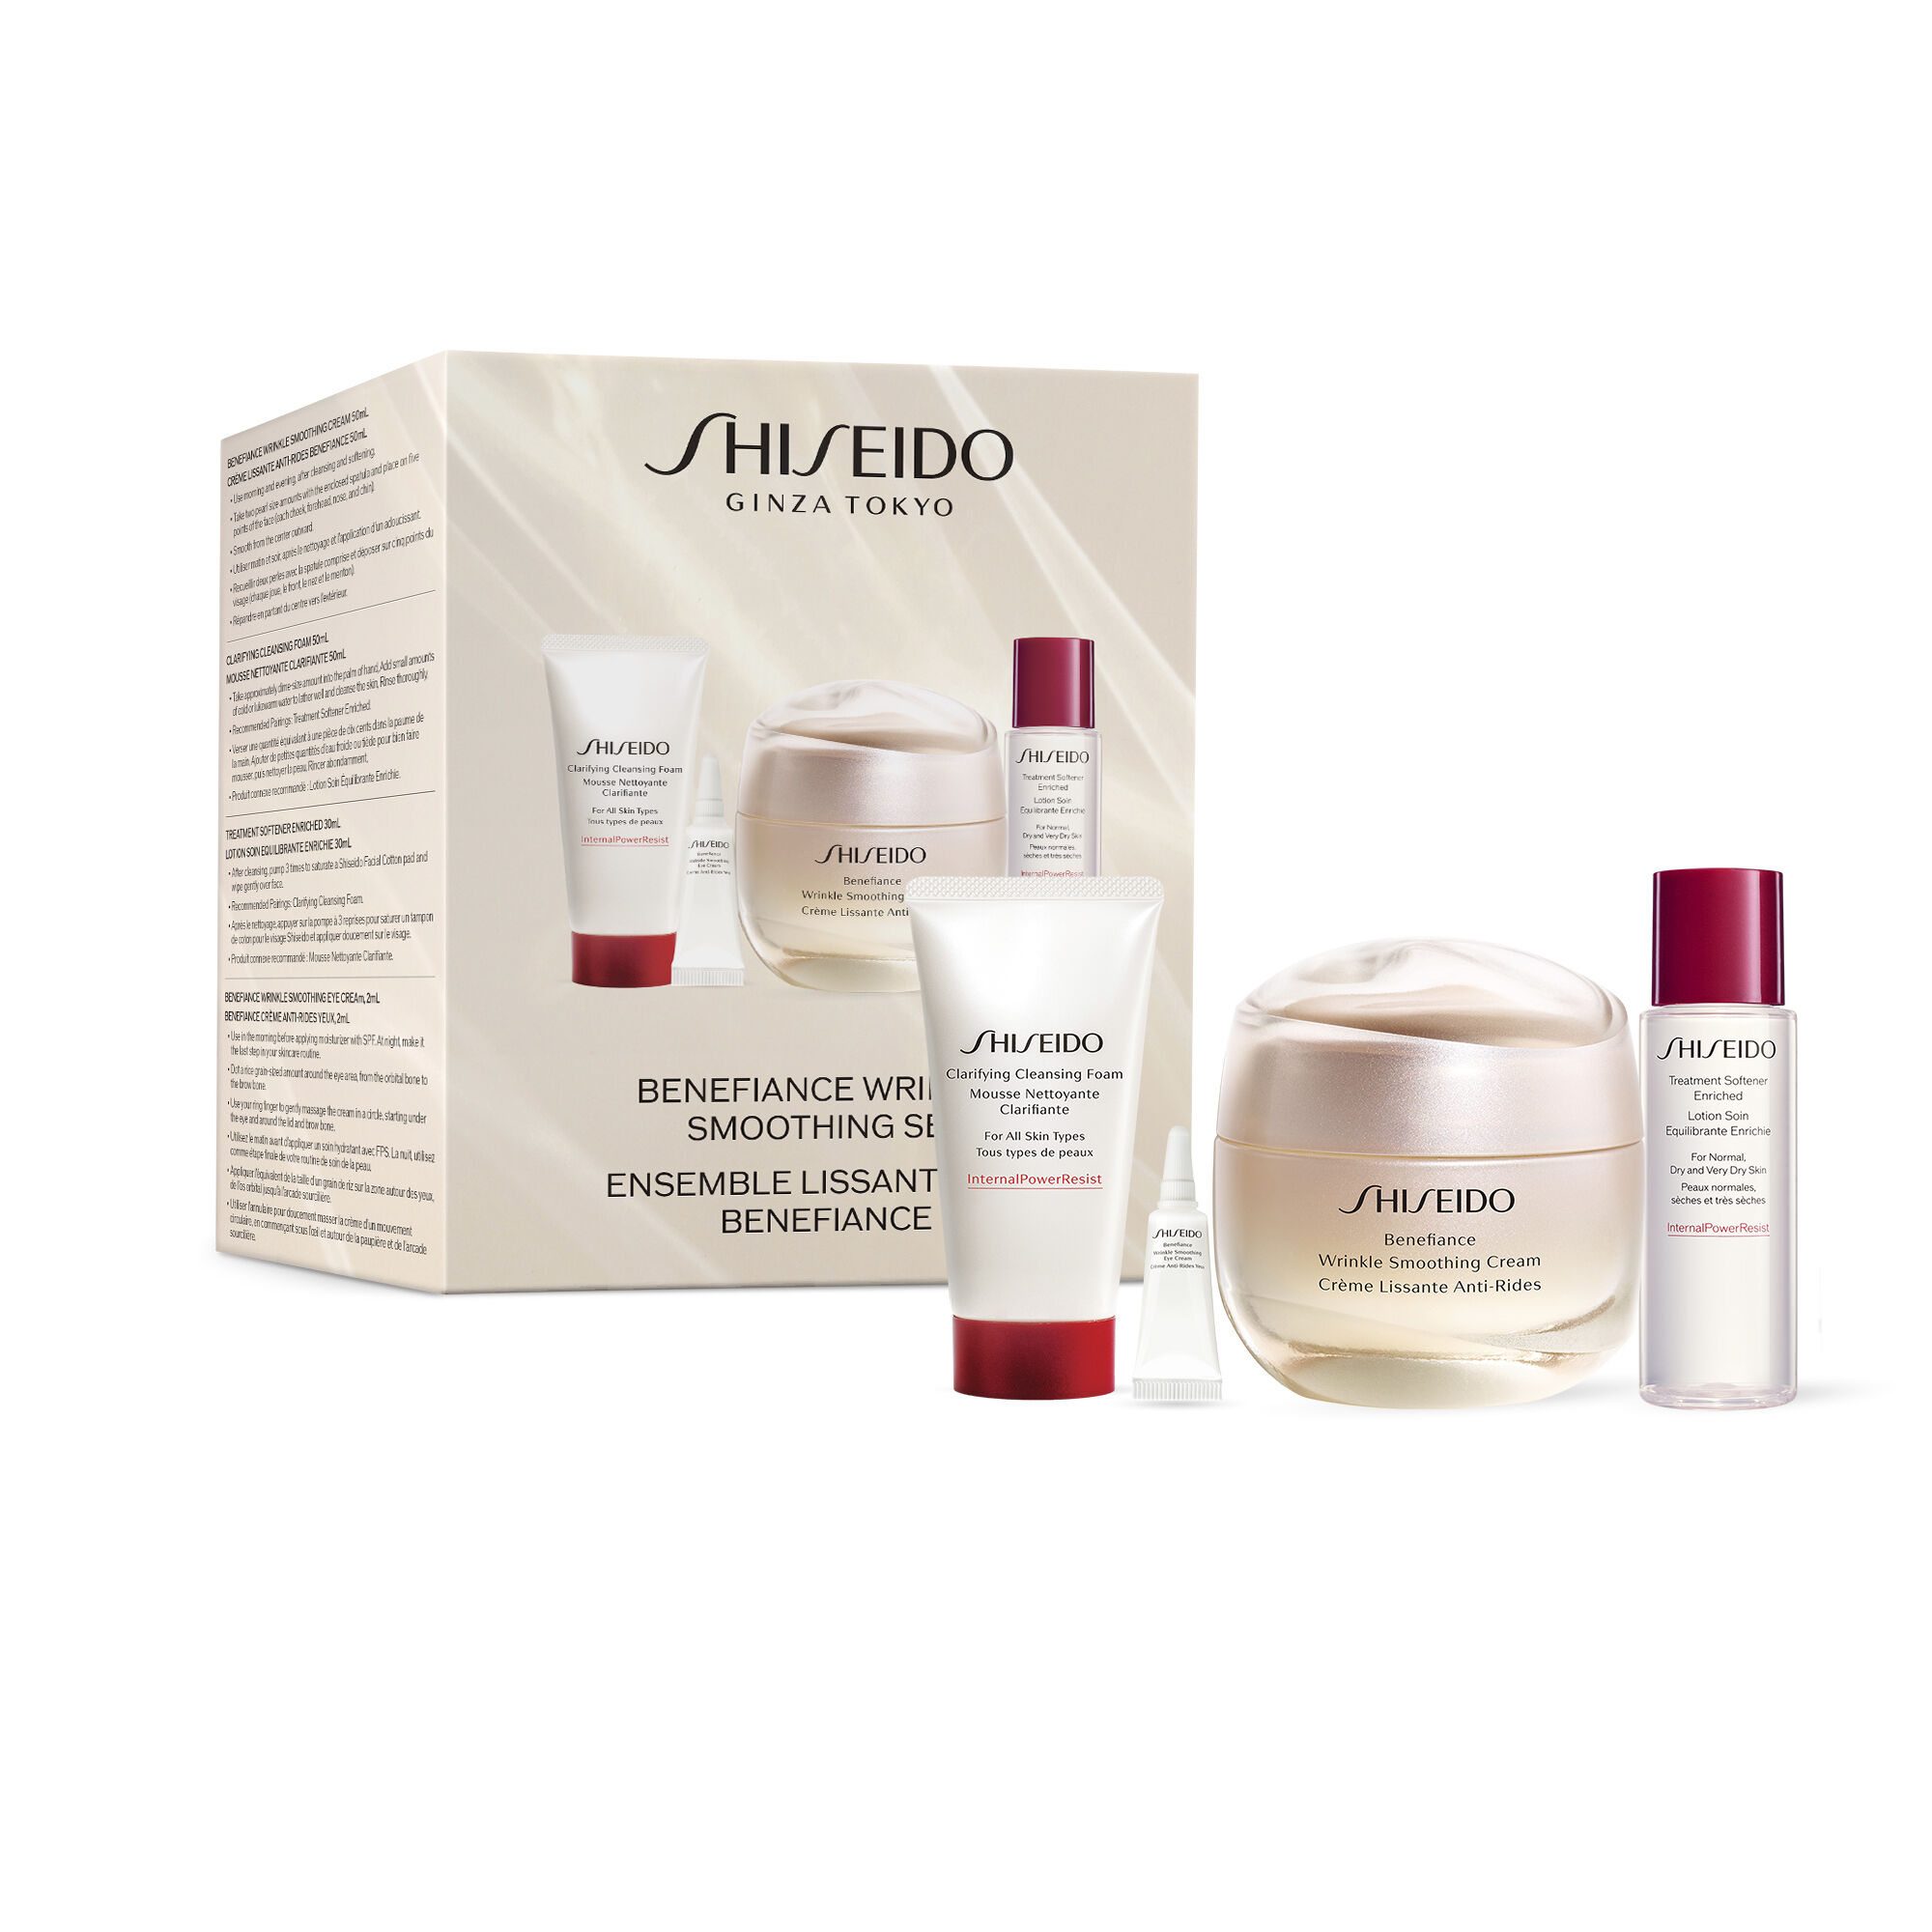 Shiseido Benefiance Wrinkle Smoothing Set (Value $142)